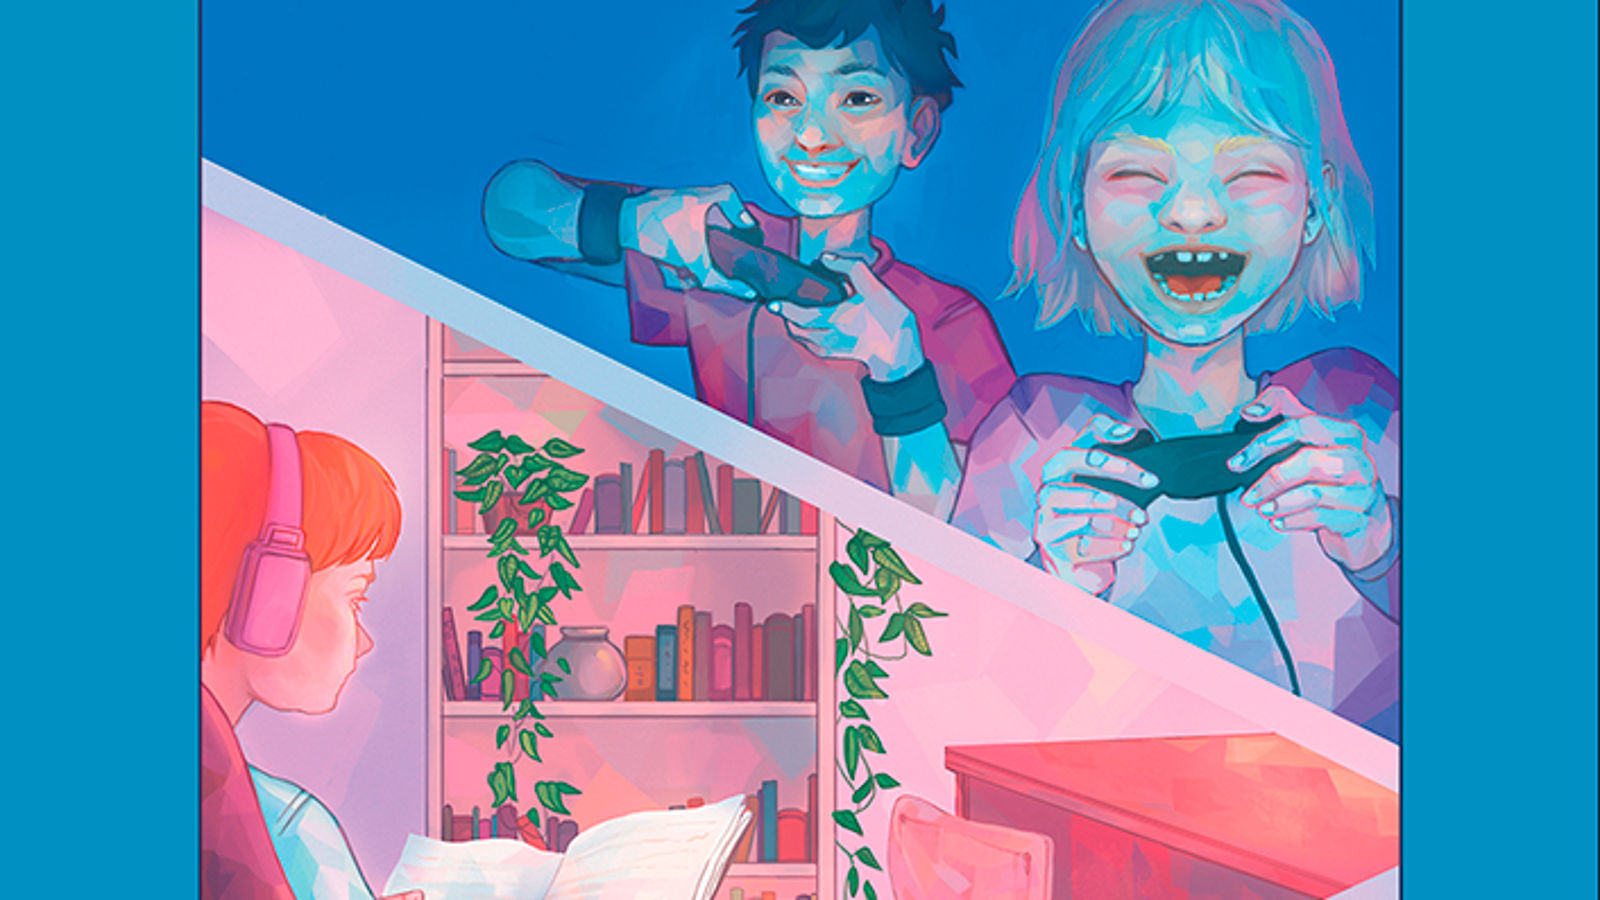 Kuvassa on osa tutkimuksen kannesta, jossa on piirroskuvassa vinosti jaettu tila.  Ylemmässä kuvassa on tyttö ja poika pelaamassa pelikonsoleilla ja alemmassa tyttö istumassa lukien kirjaa.  Kuvan värit ovat vaalean sininen ja vaalean punainen pääasiassa.